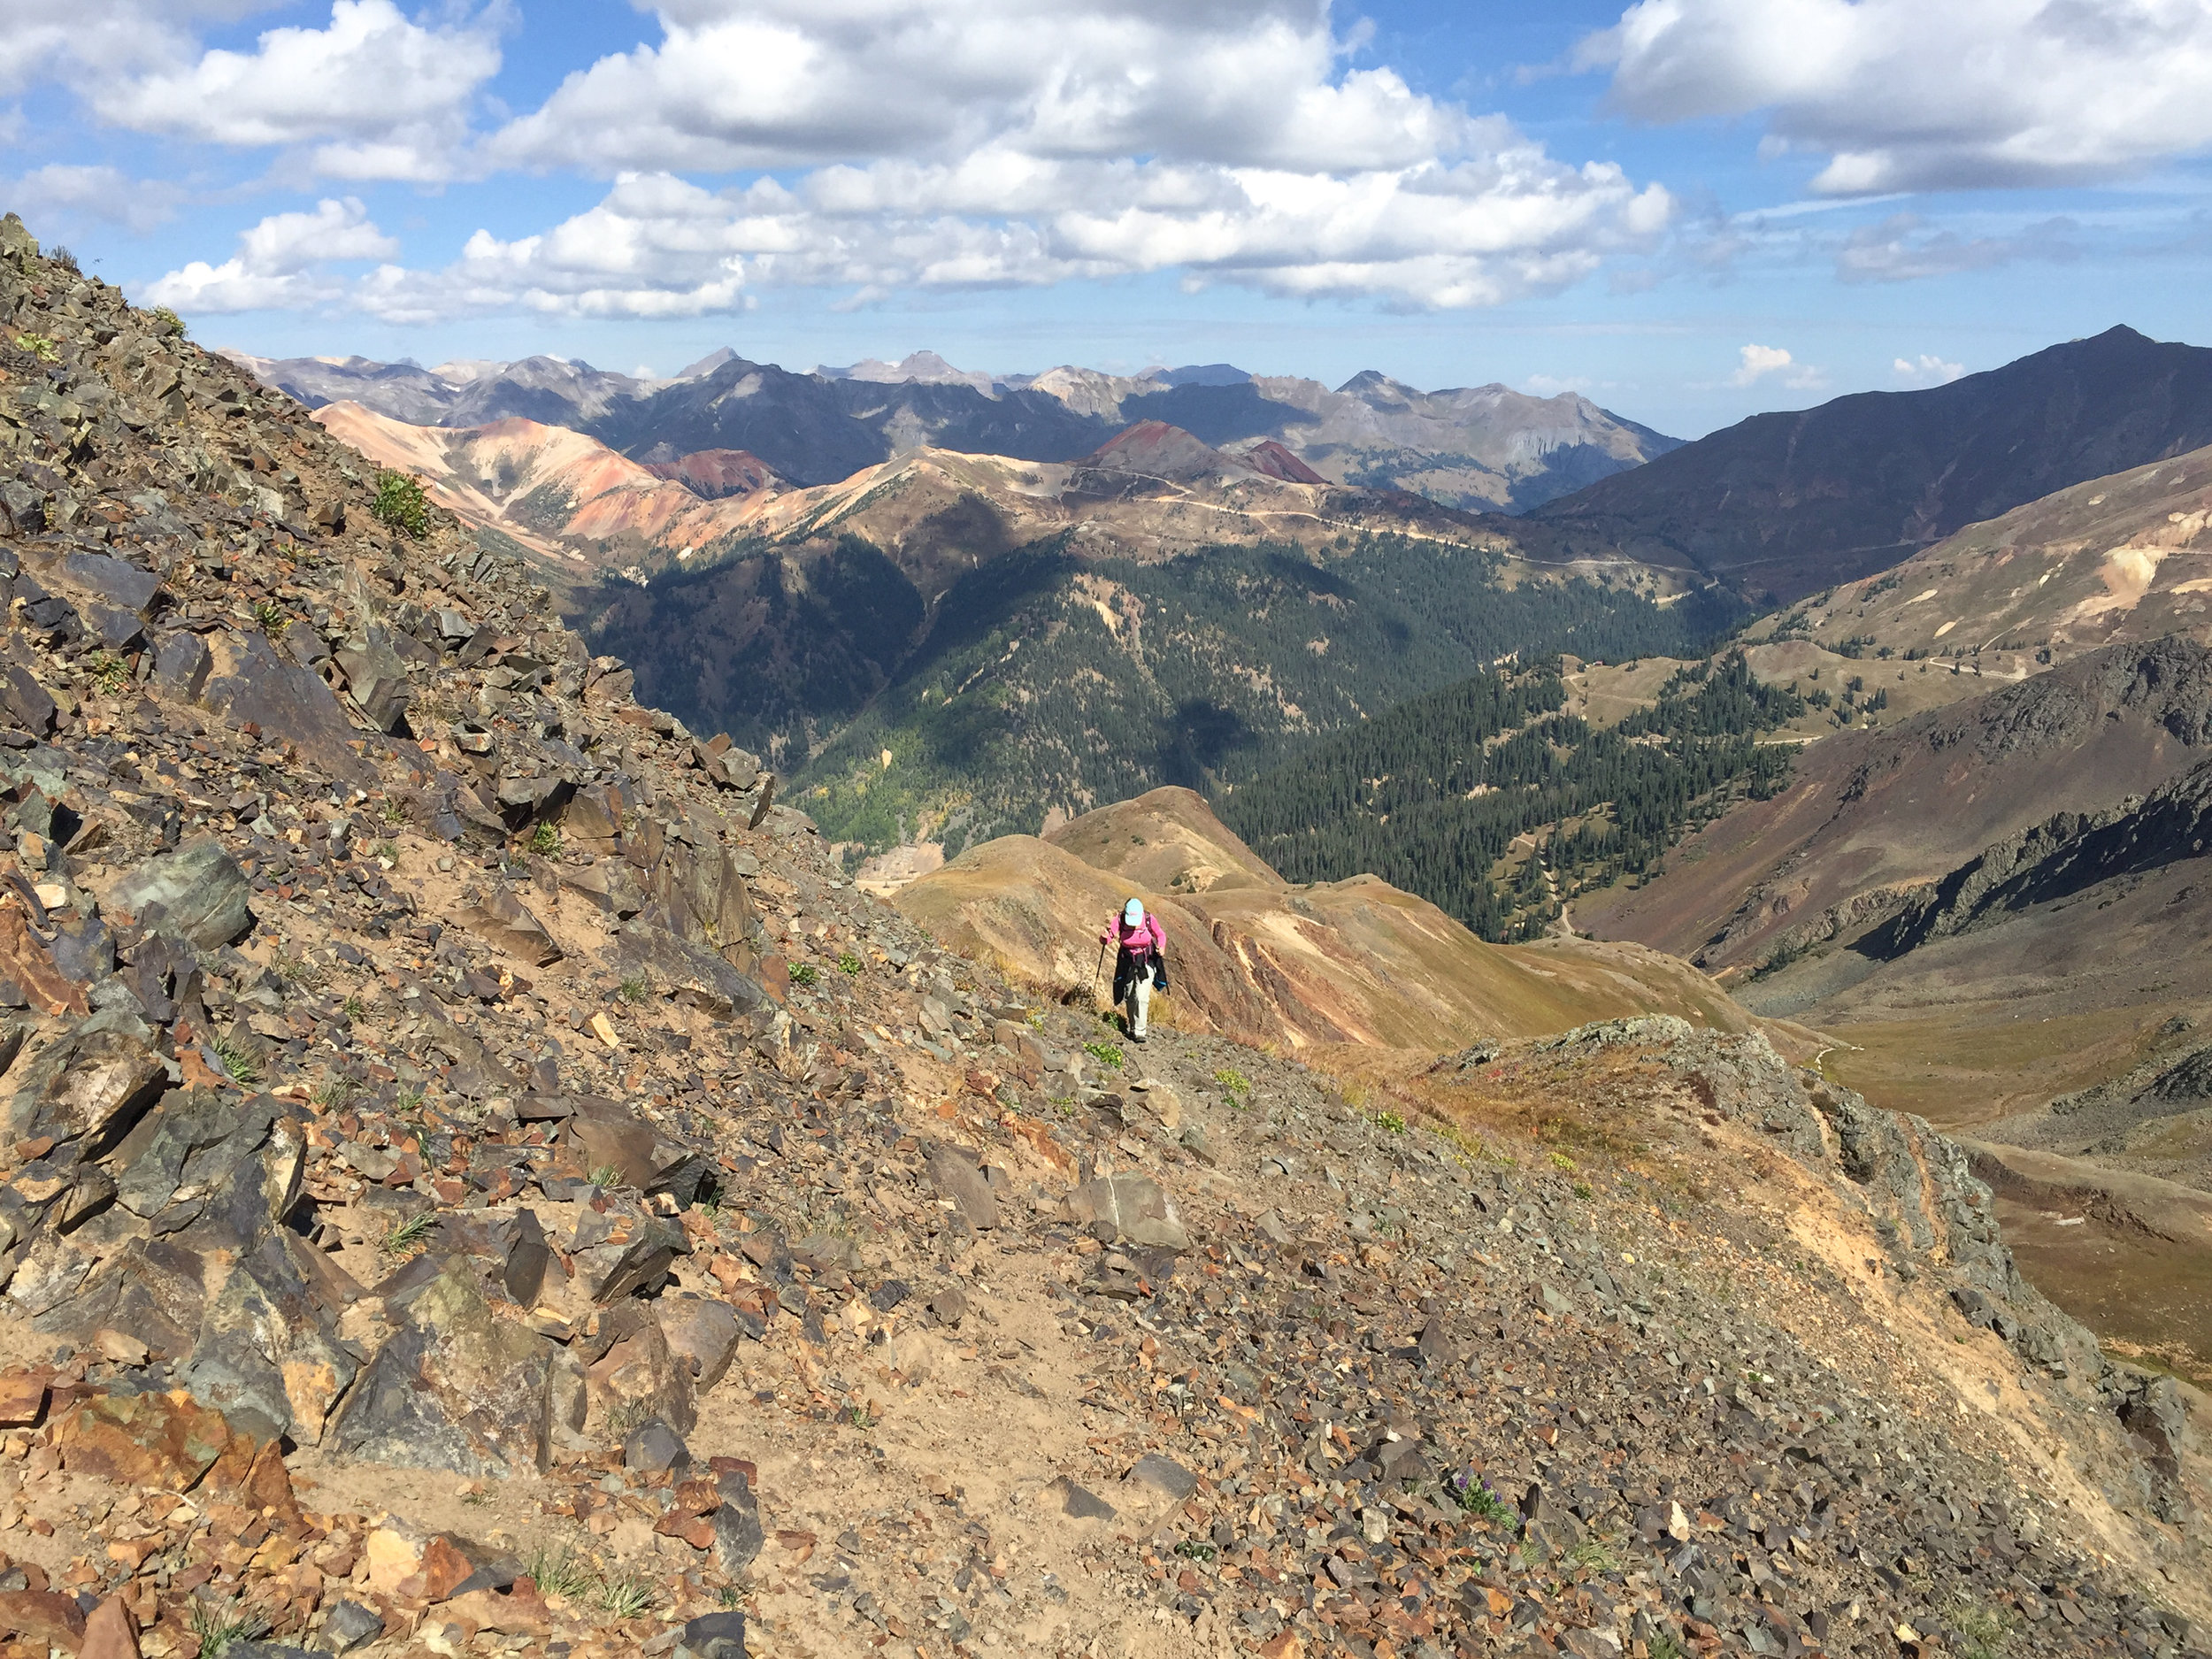 Lisa hiking on the ridge, Image # 2922